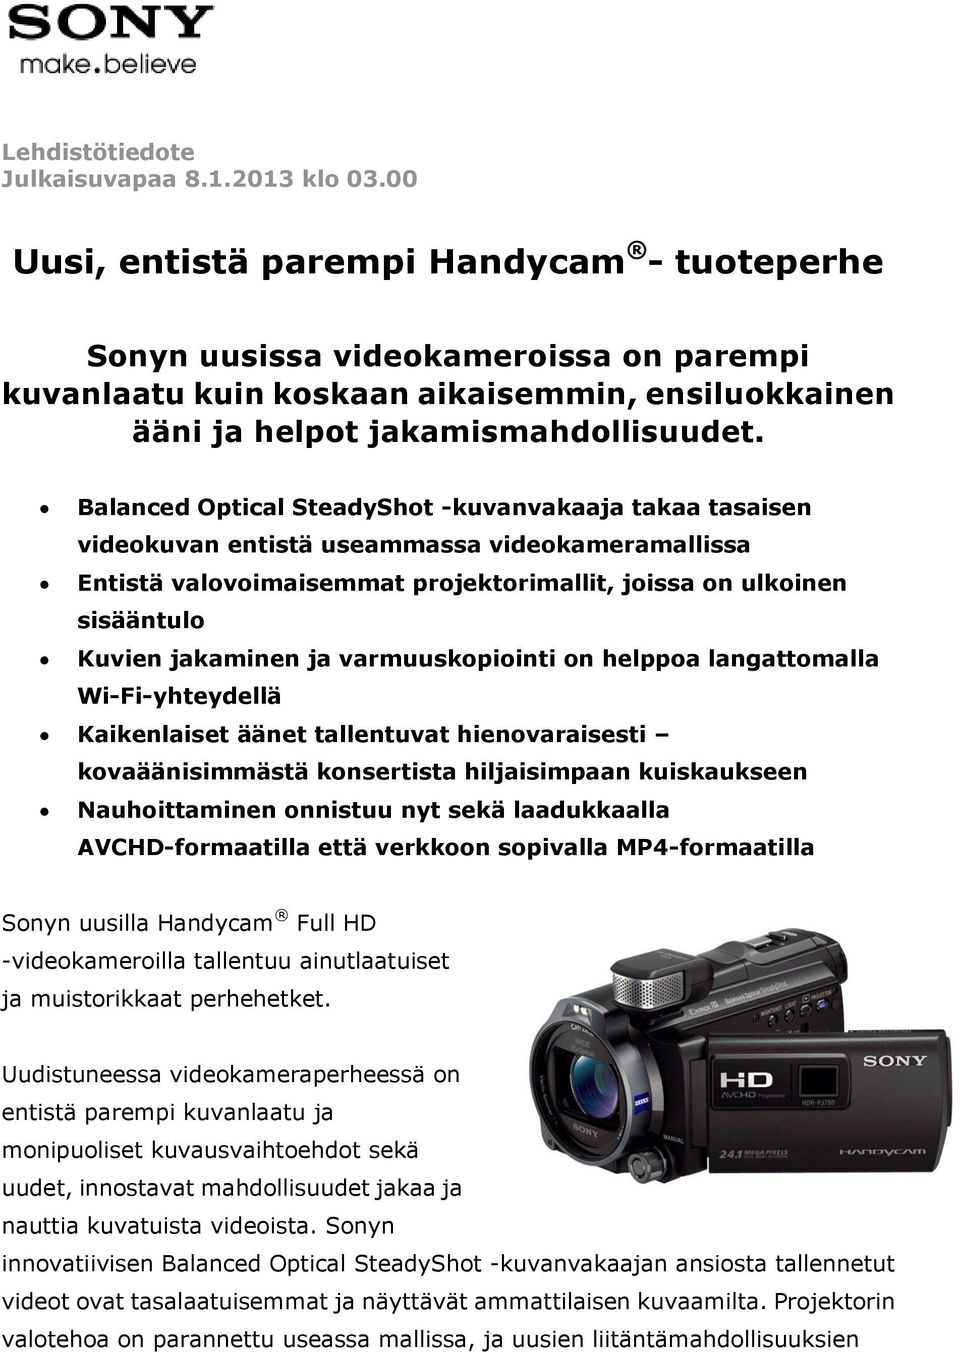 SteadyShot -kuvanvakaaja takaa tasaisen videokuvan entistä useammassa videokameramallissa Entistä valovoimaisemmat projektorimallit, joissa on ulkoinen sisääntulo Kuvien jakaminen ja varmuuskopiointi